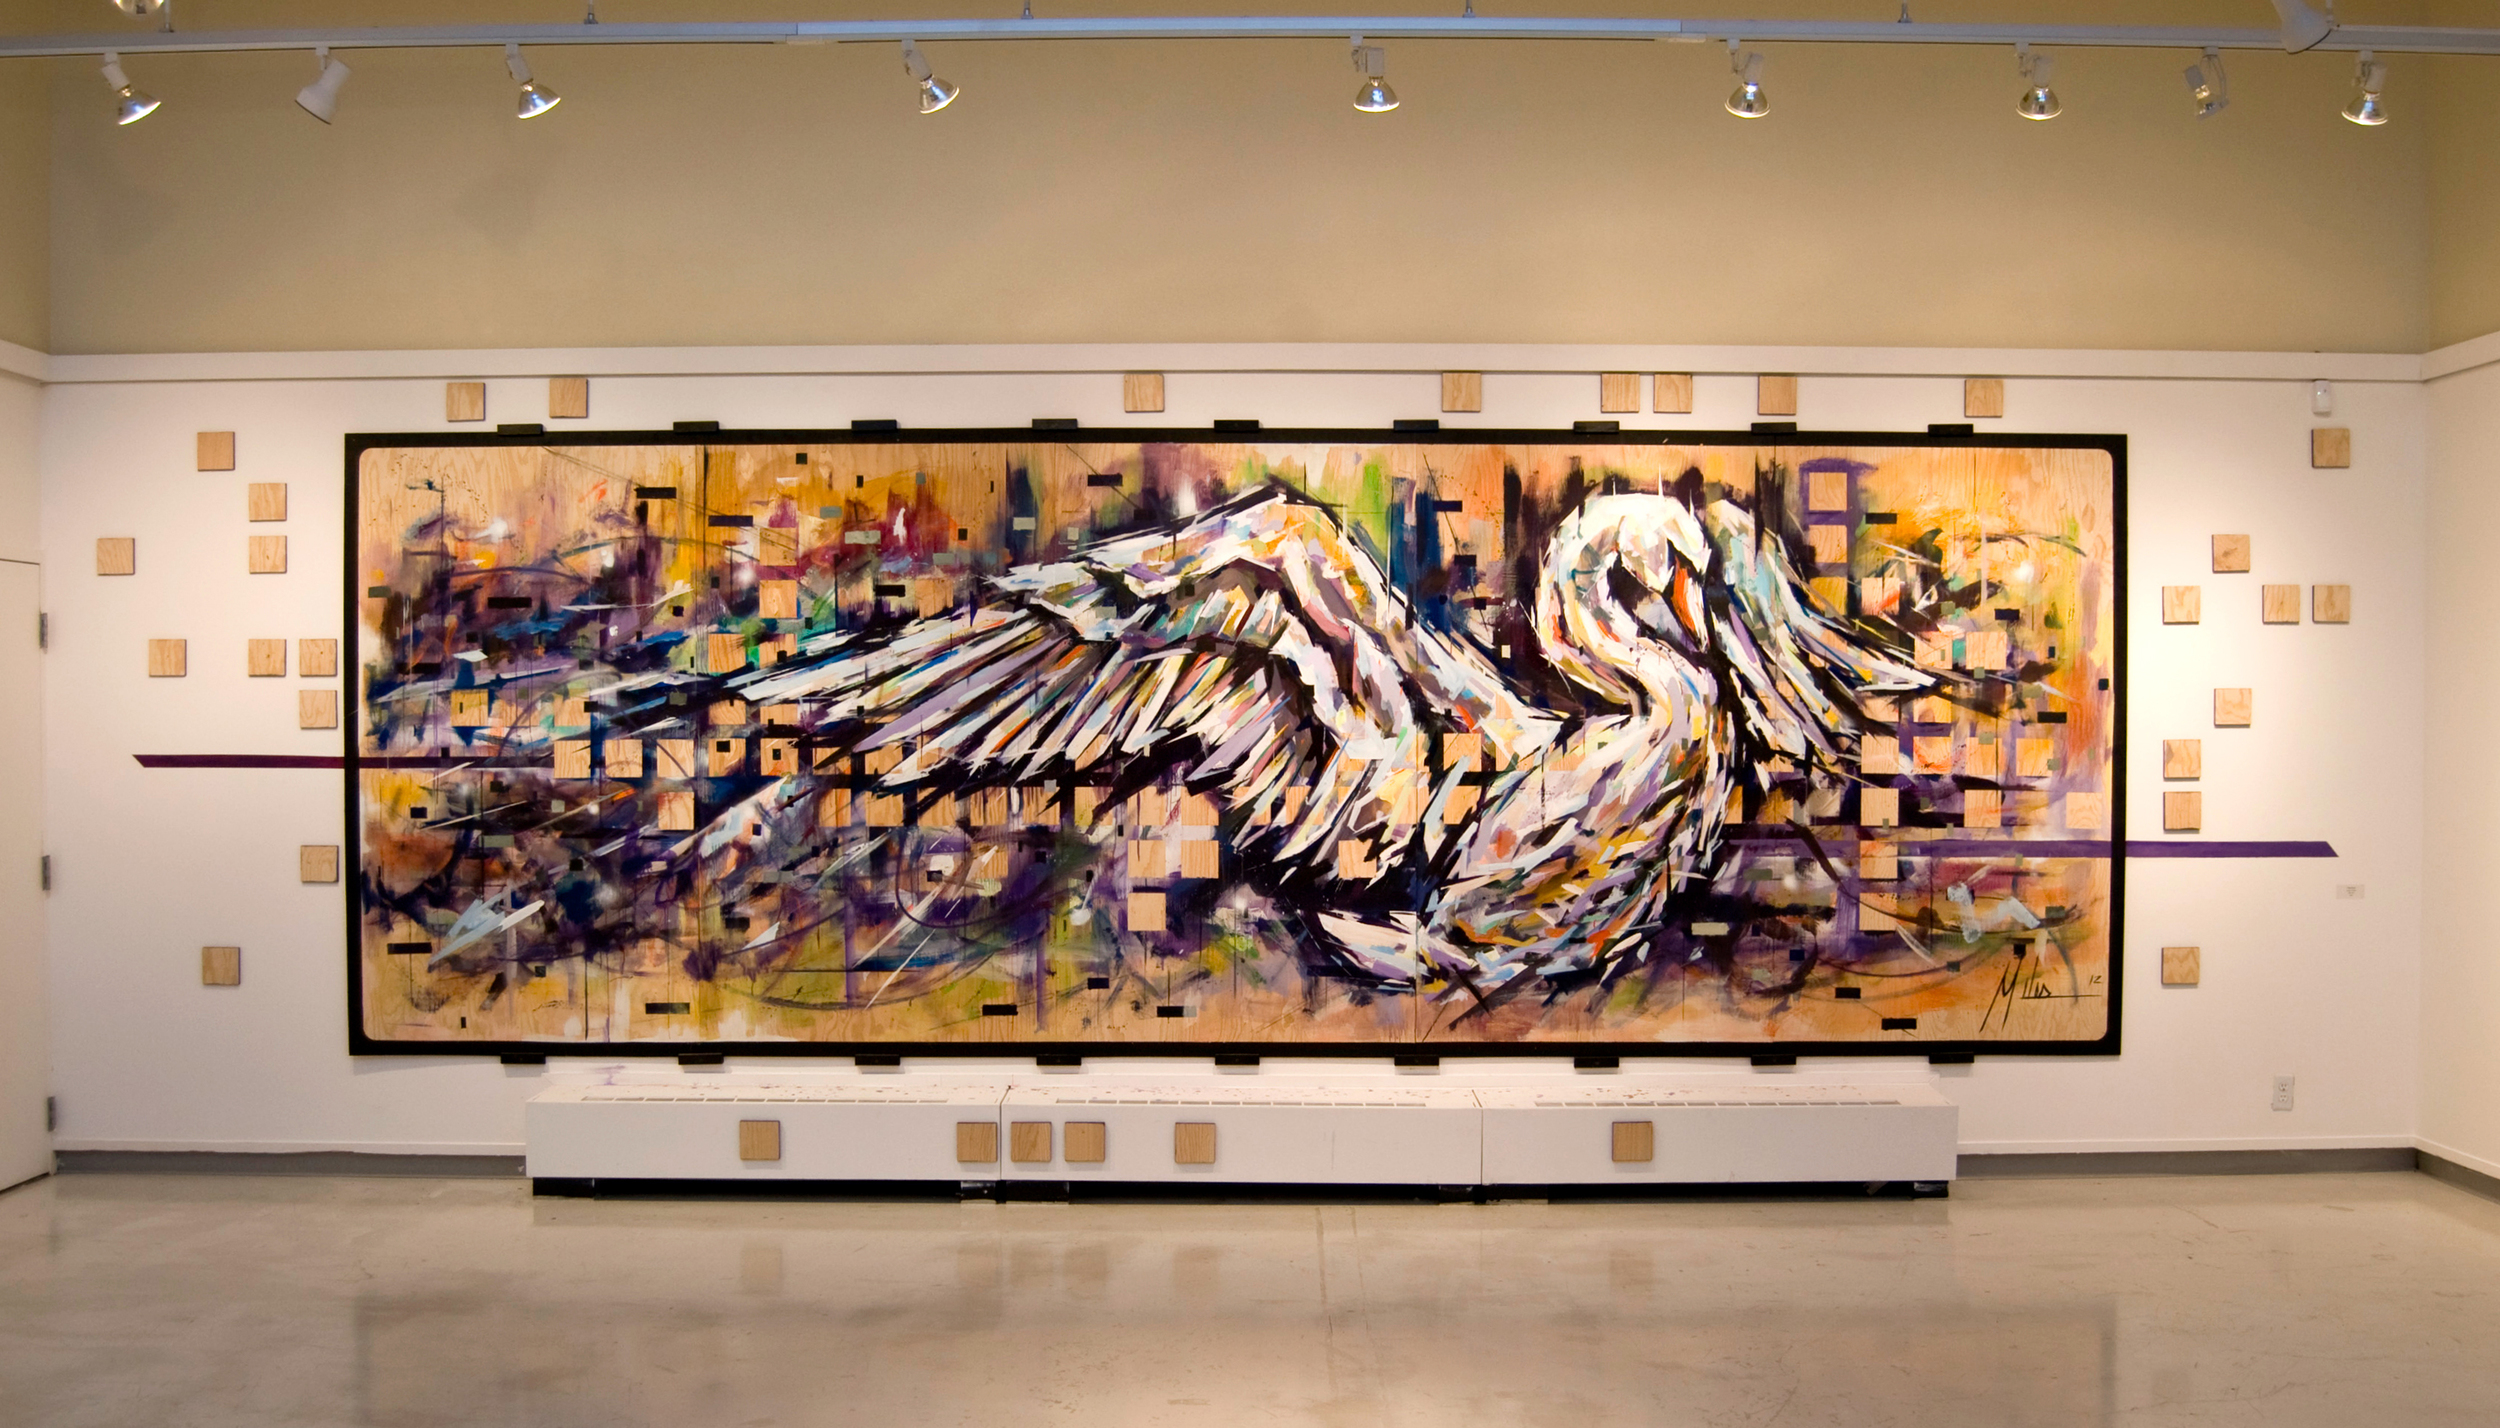  “Swan Song”  acrylic on wood panel  240” x 84”  2012  $7000 